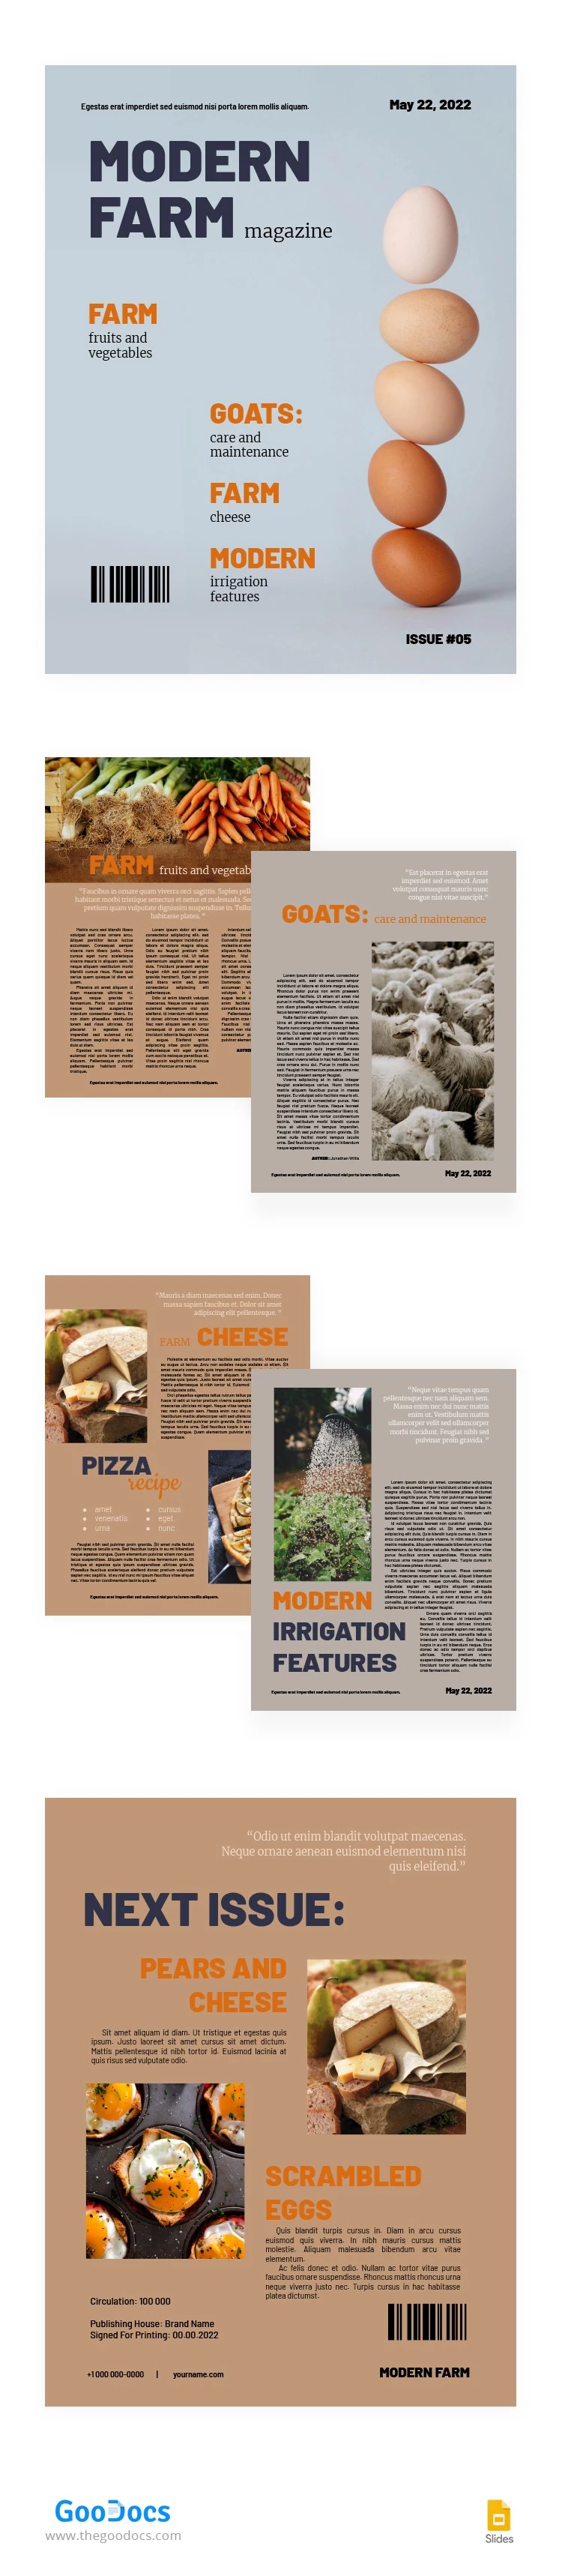 Revista Moderna da Agricultura - free Google Docs Template - 10063263